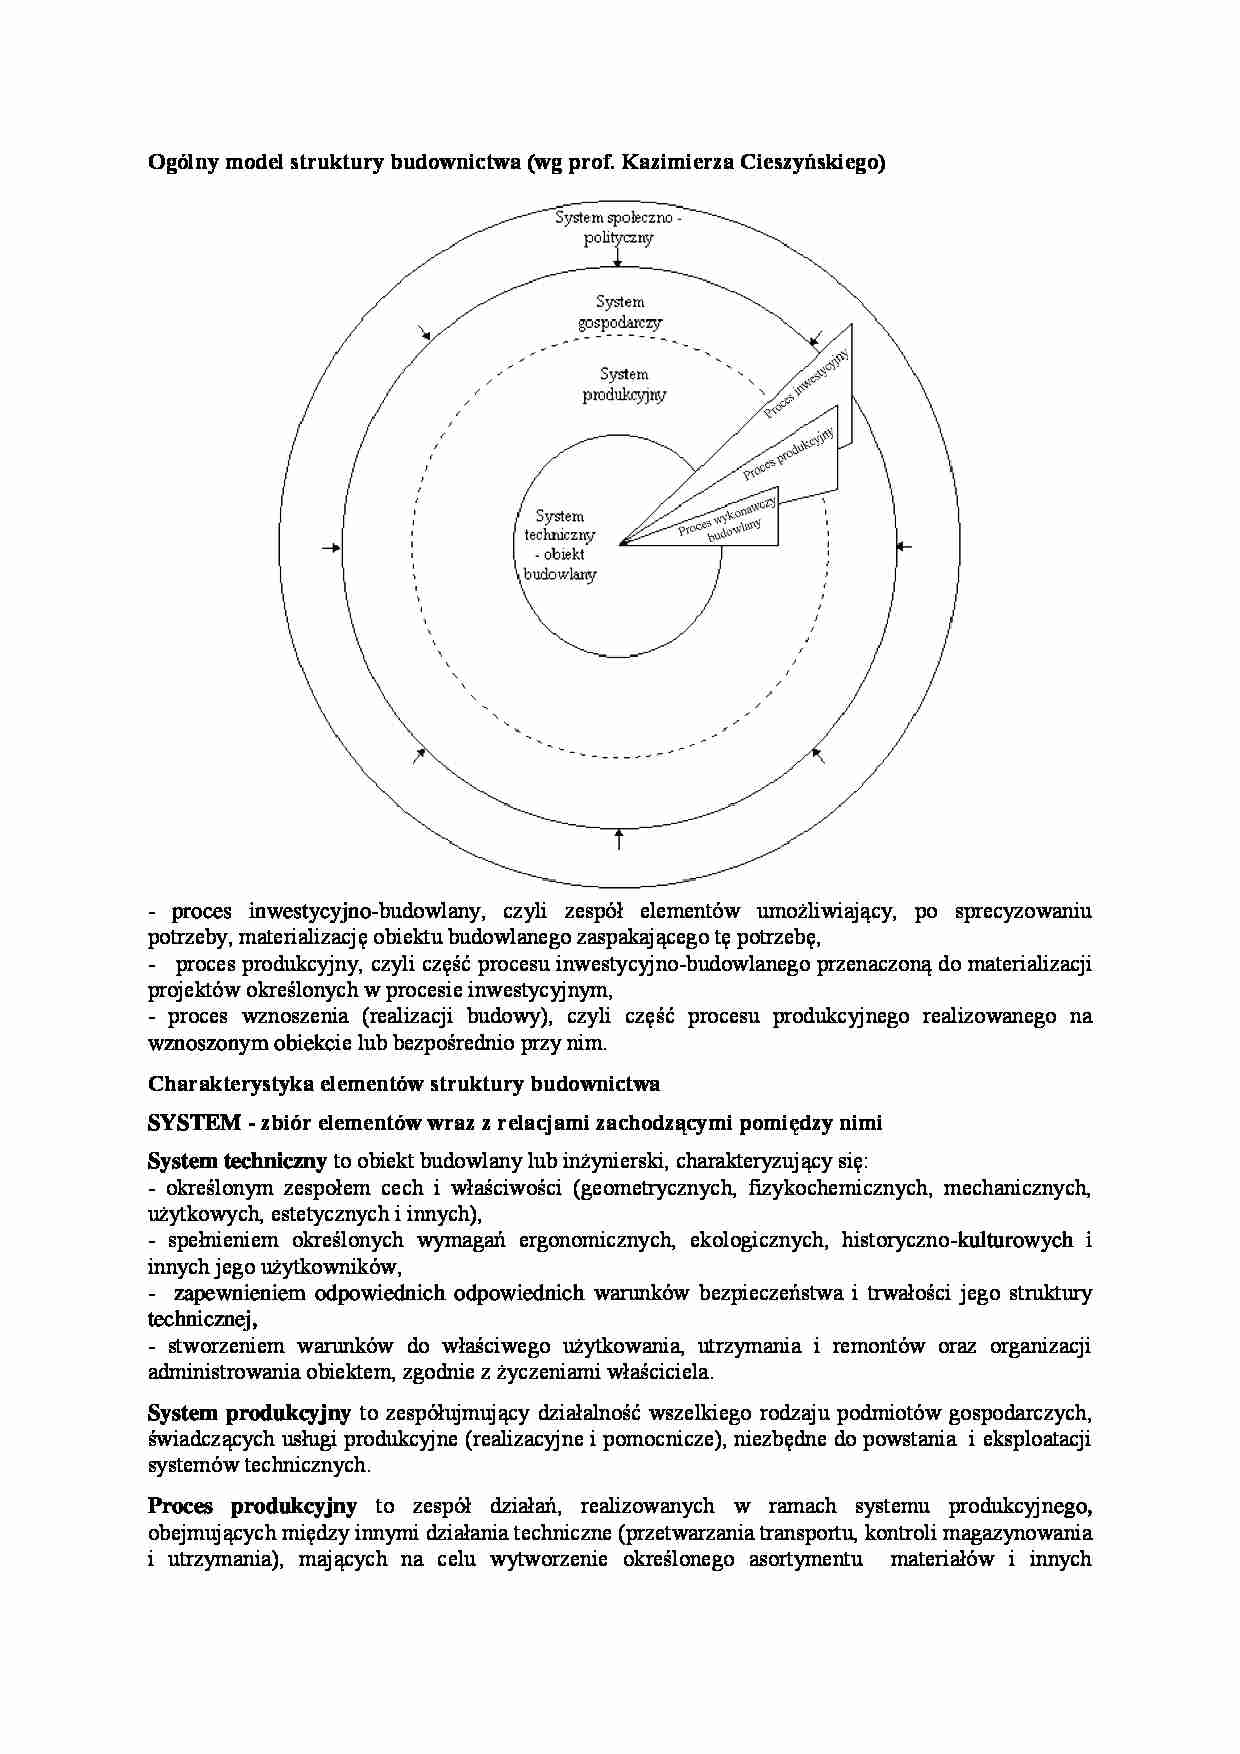 Ogólny model struktury budownictwa - omówienie  - strona 1